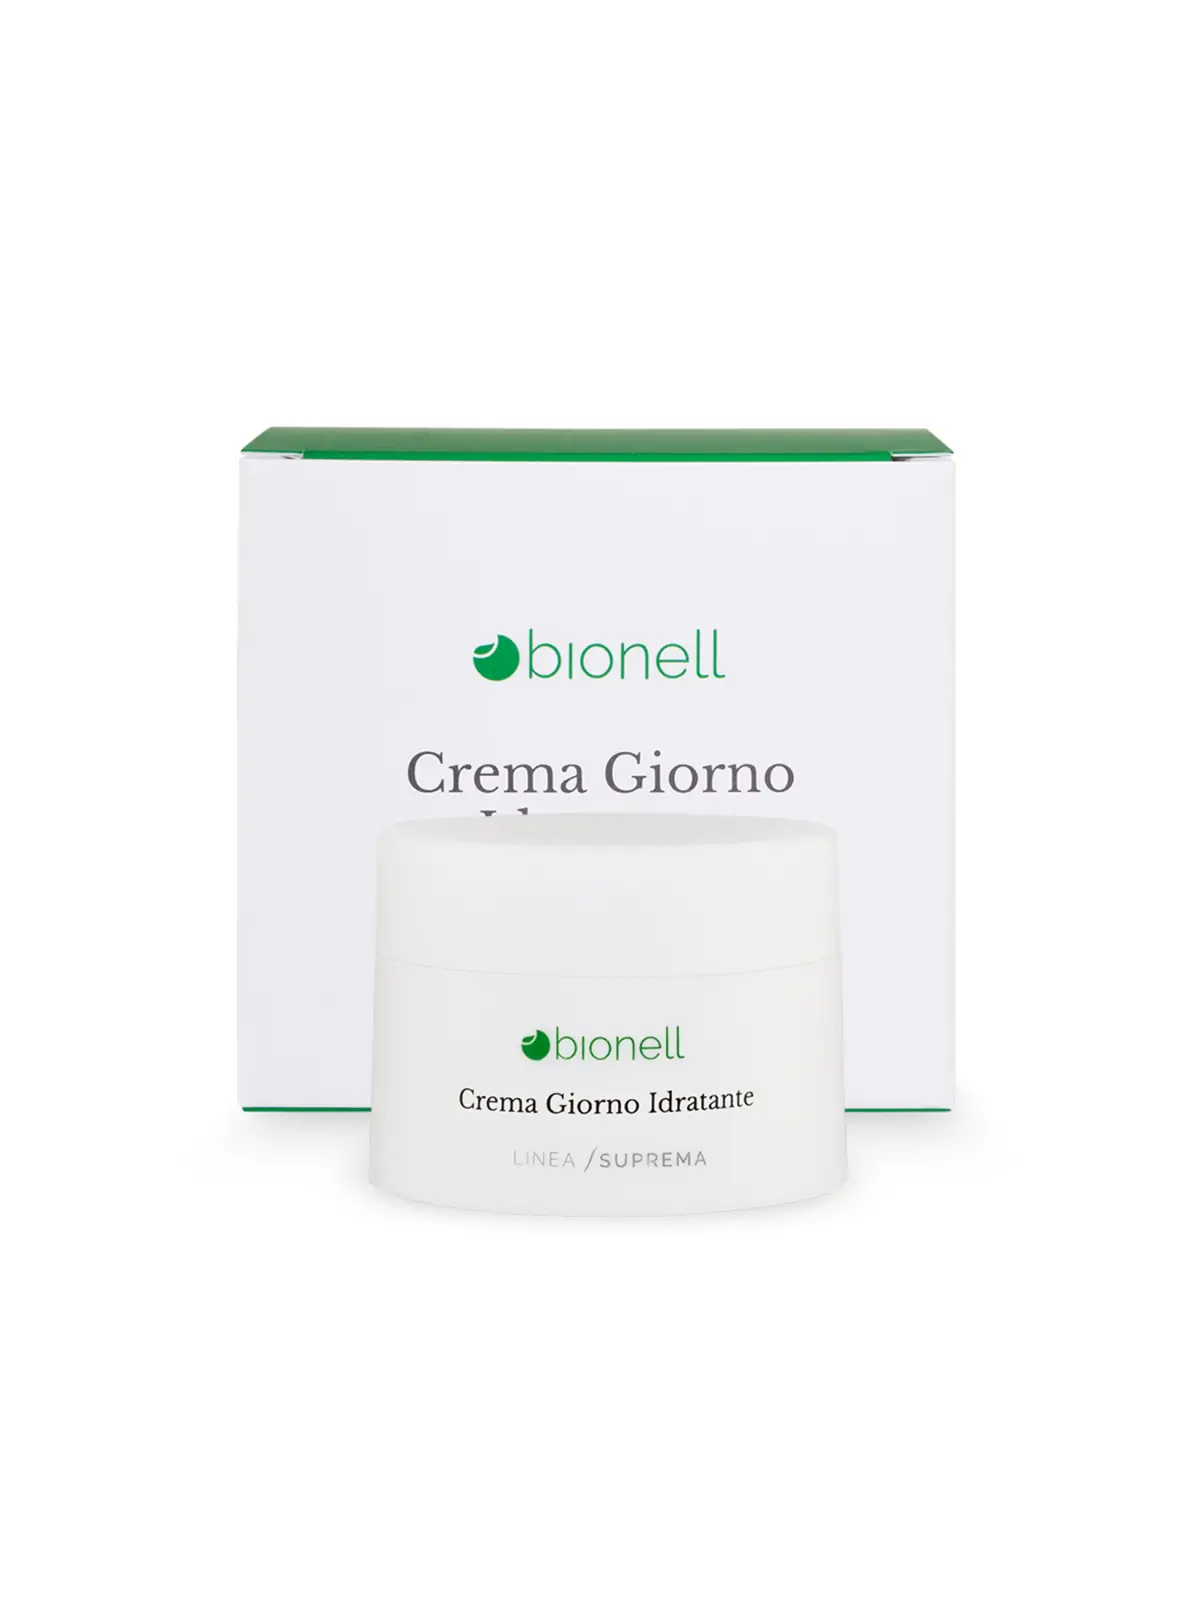 Bionell Crema giorno idratante 50 ml 8,80 € -20%